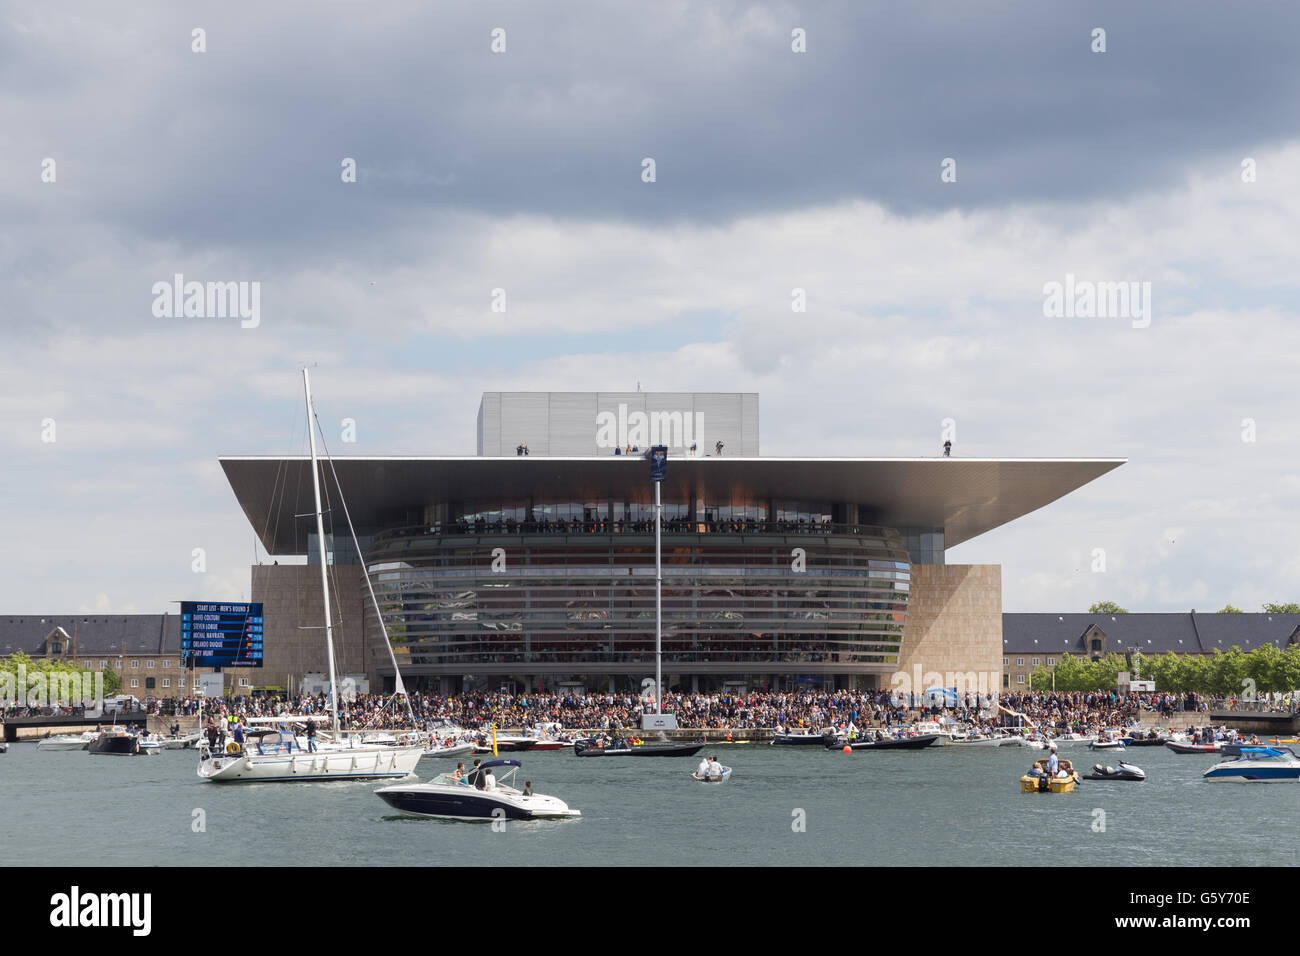 Copenhagen, Danimarca - 18 Giugno 2016: gli spettatori presso il Red Bull cliff diving evento presso il Teatro dell'Opera. Foto Stock